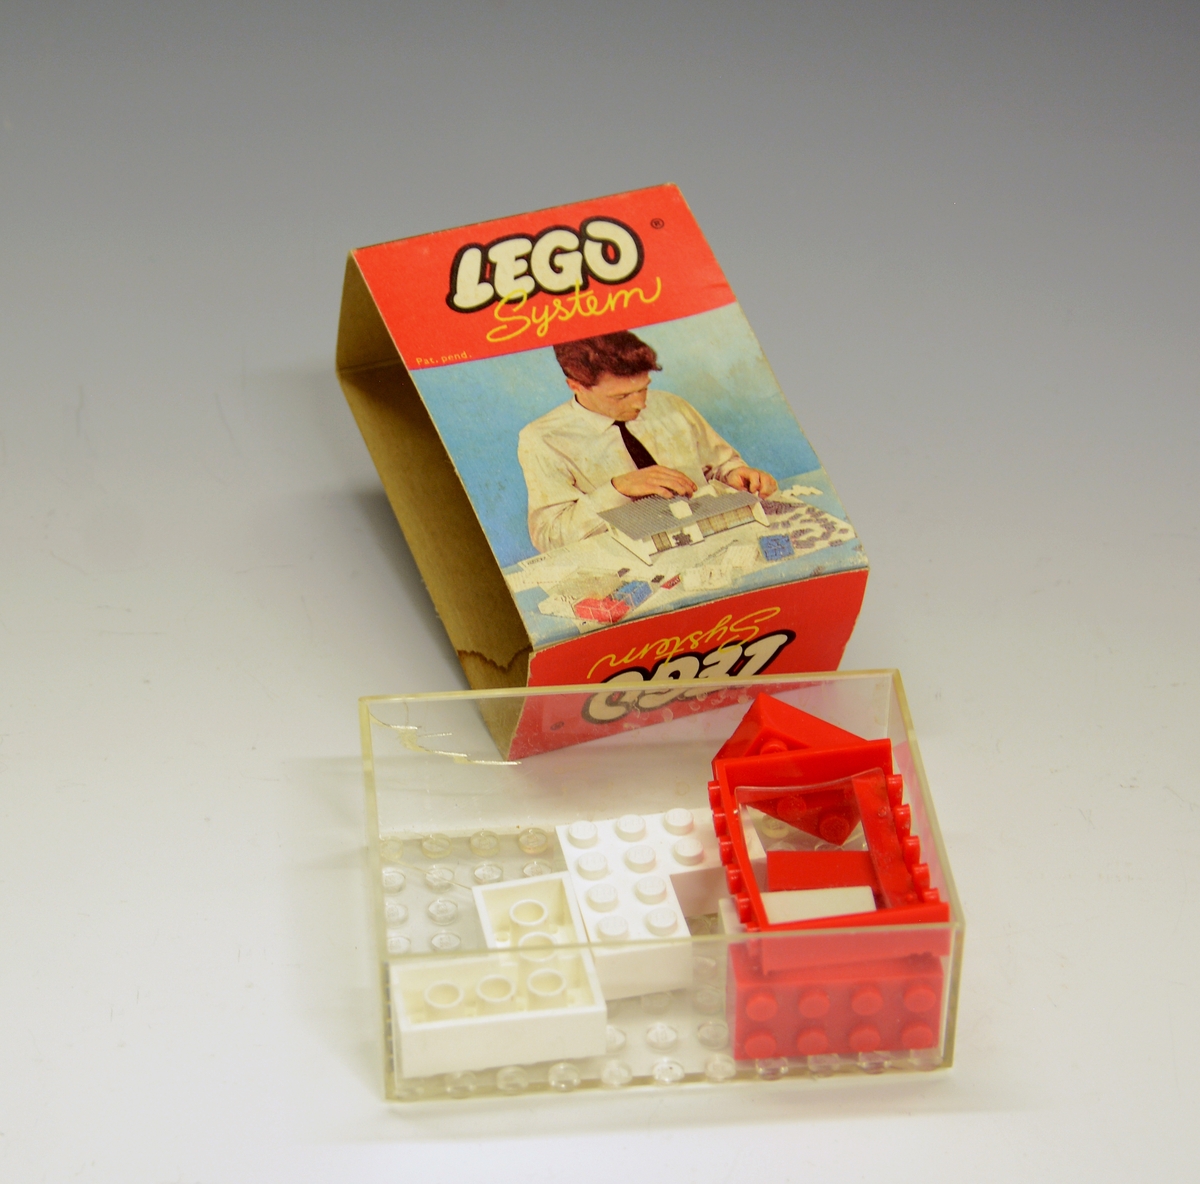 Originaleske i plastikk med "overtrekk" i papp. Ikke produsert som leketøy i utgangspunktet - bildet på esken viser en mann som bygger en modell av et hus i Lego.